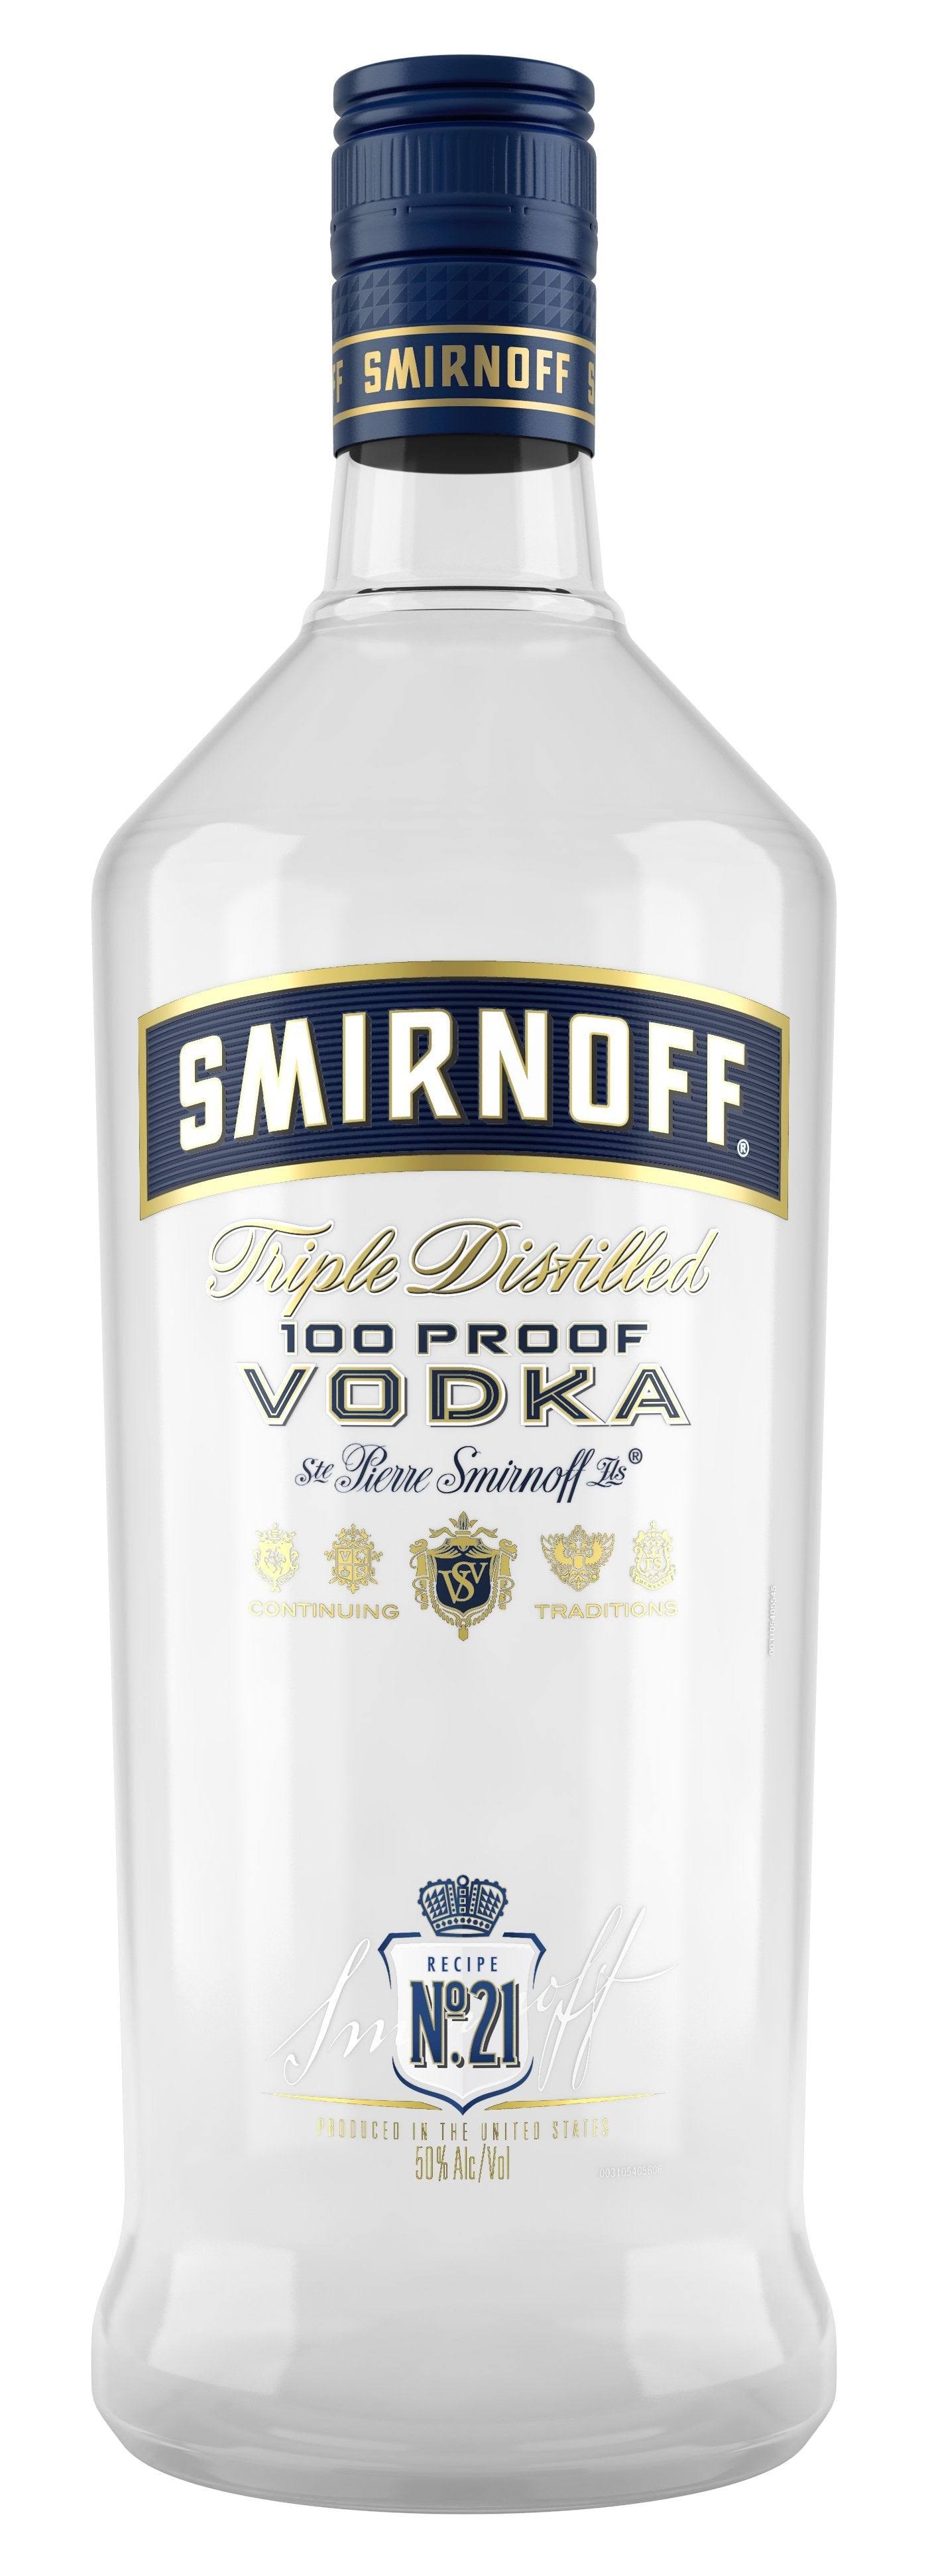 Smirnoff No. 57 Blue Label 100 Proof Vodka 1.75lt Bottle